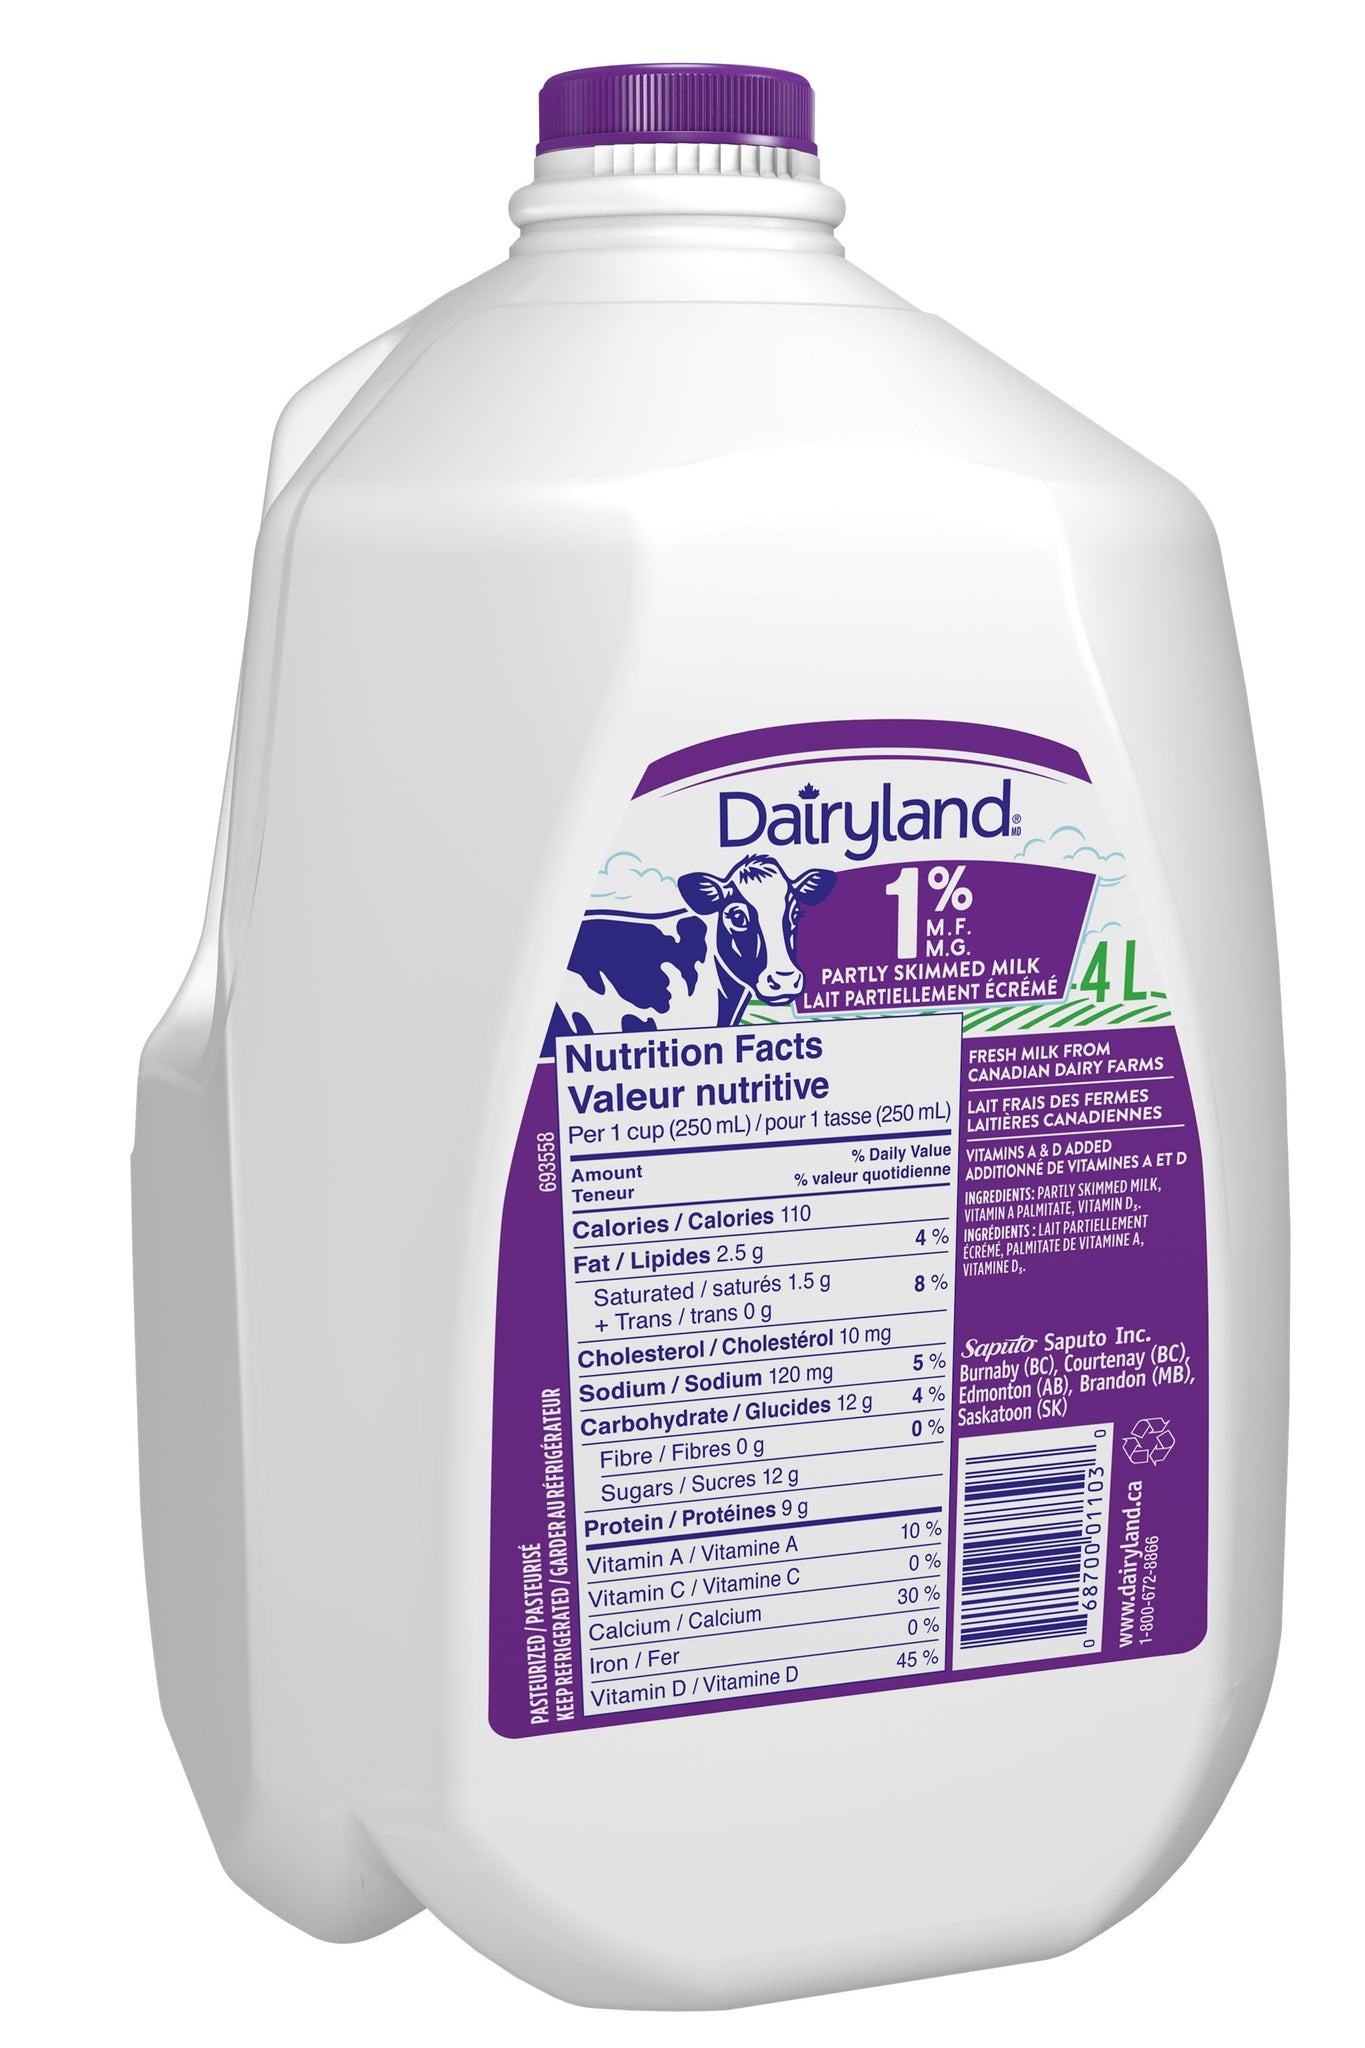 Dairyland 1% Milk 4l [$1.49/l]